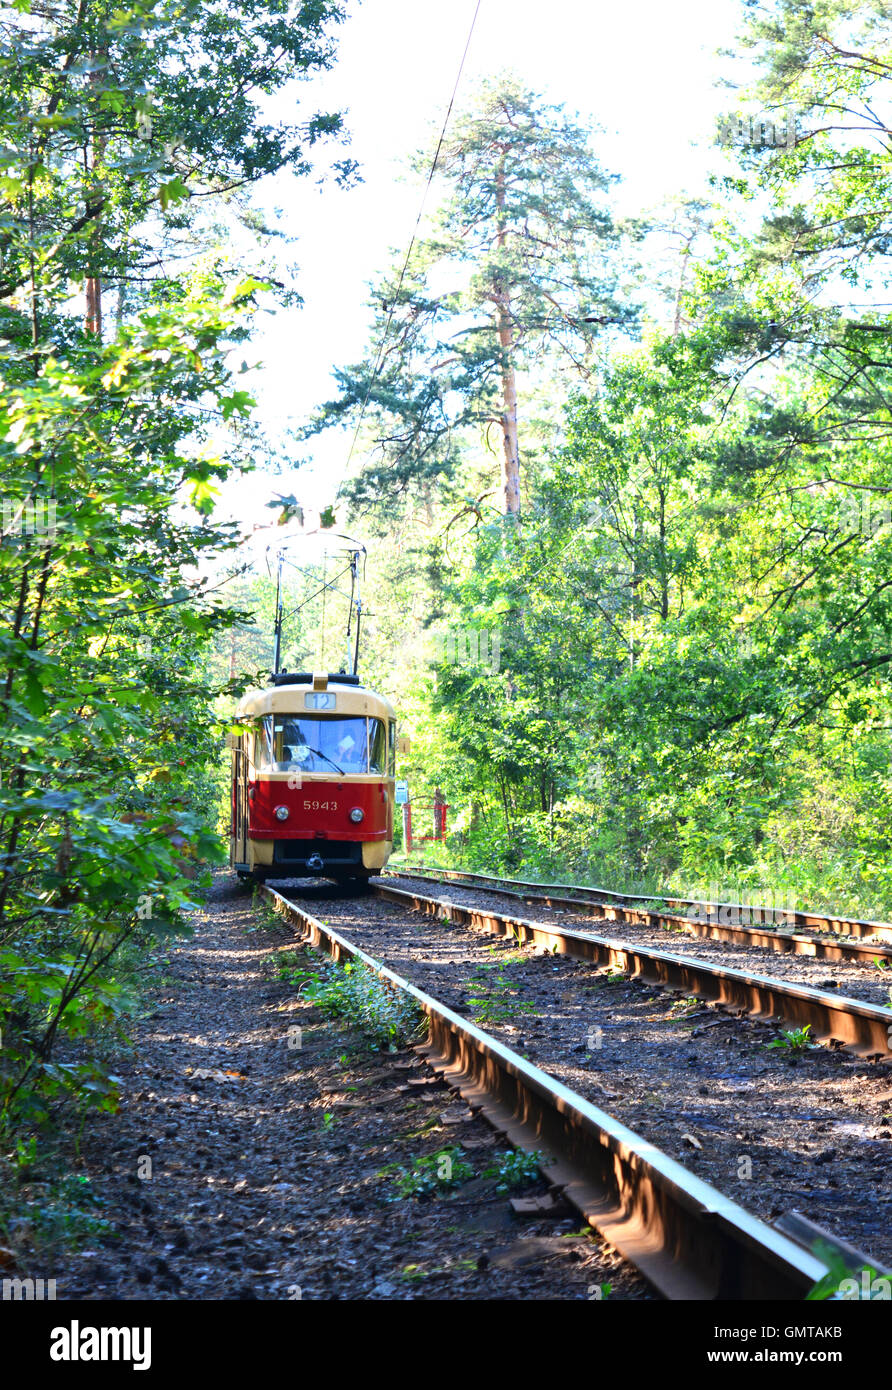 Retrò tram rosso corse in auto sulla stessa stazione i boschi. Foto Stock